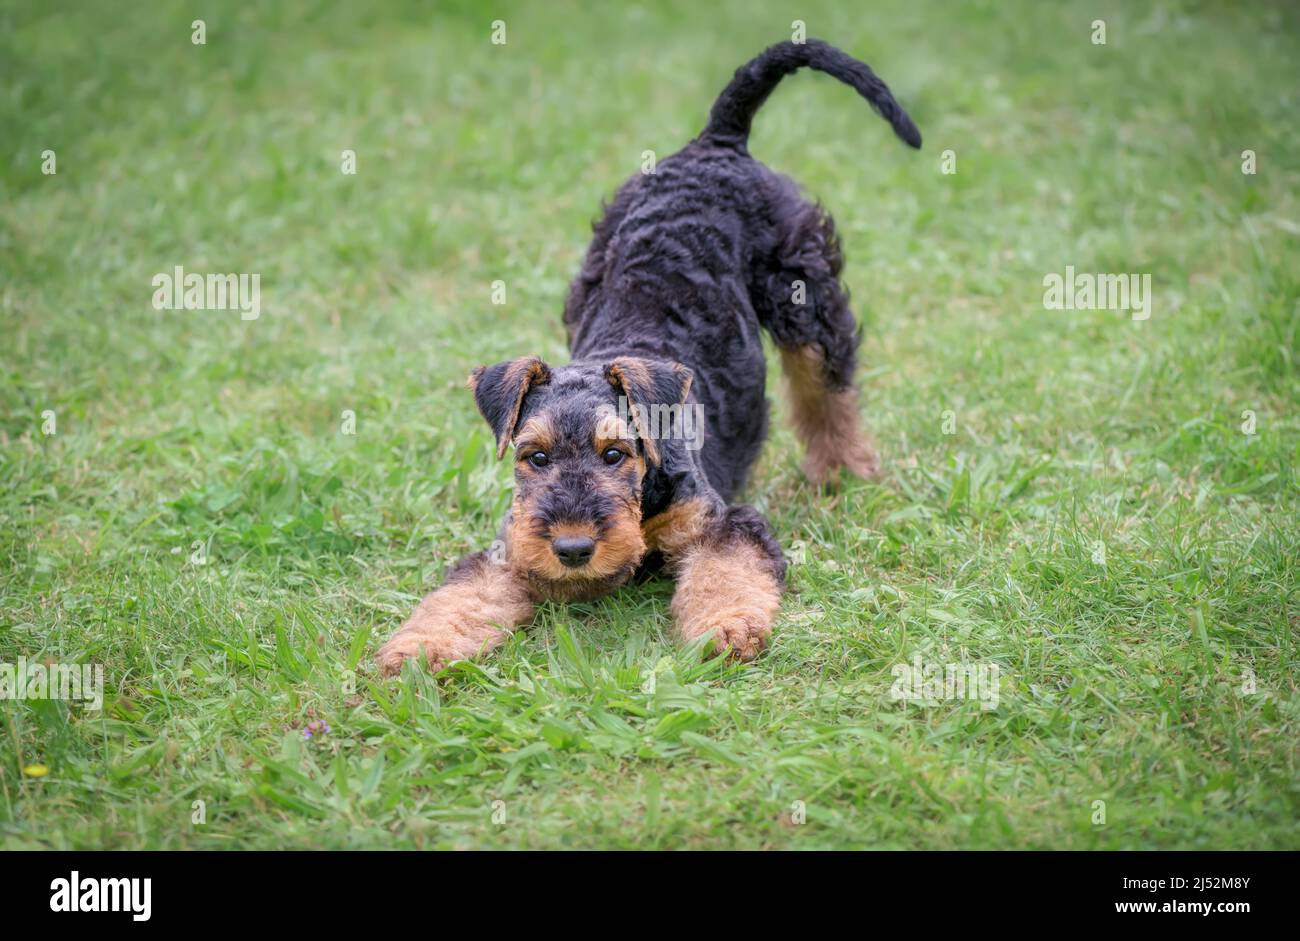 Un chiot Airedale Terrier joueur, âgé de 10 semaines, selle noire avec des marques de bronzage, dans une position d'arc de jeu dans une prairie d'herbe verte, jouons Banque D'Images